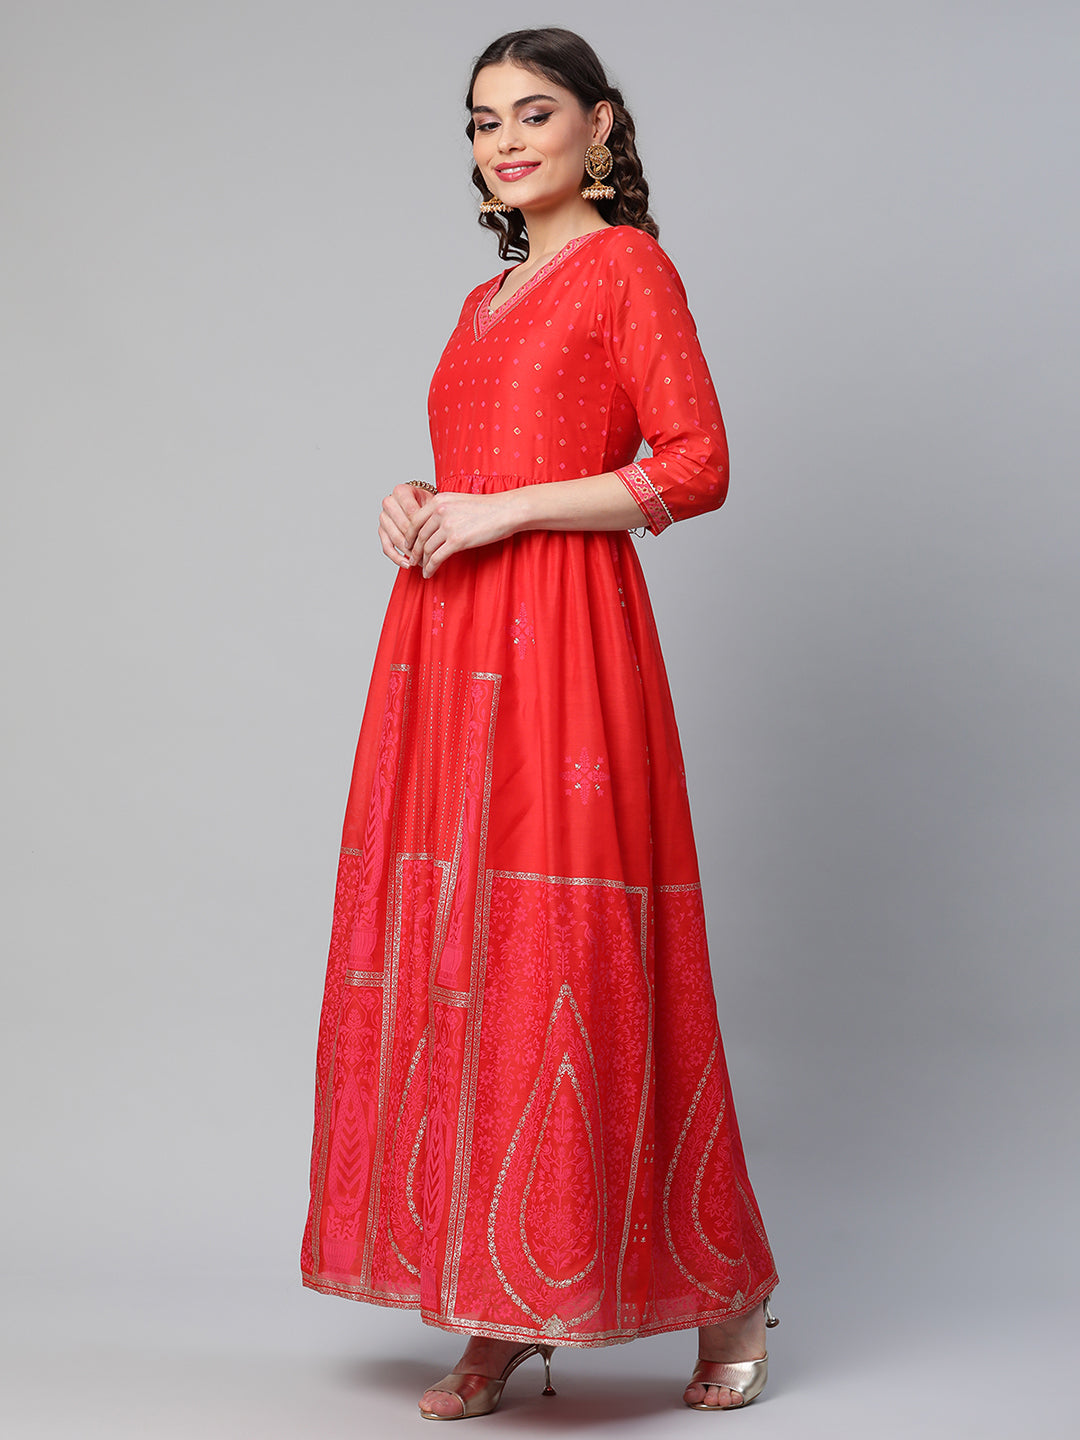 Women's Red Chanderi Khari Printed Dress - Ahalyaa